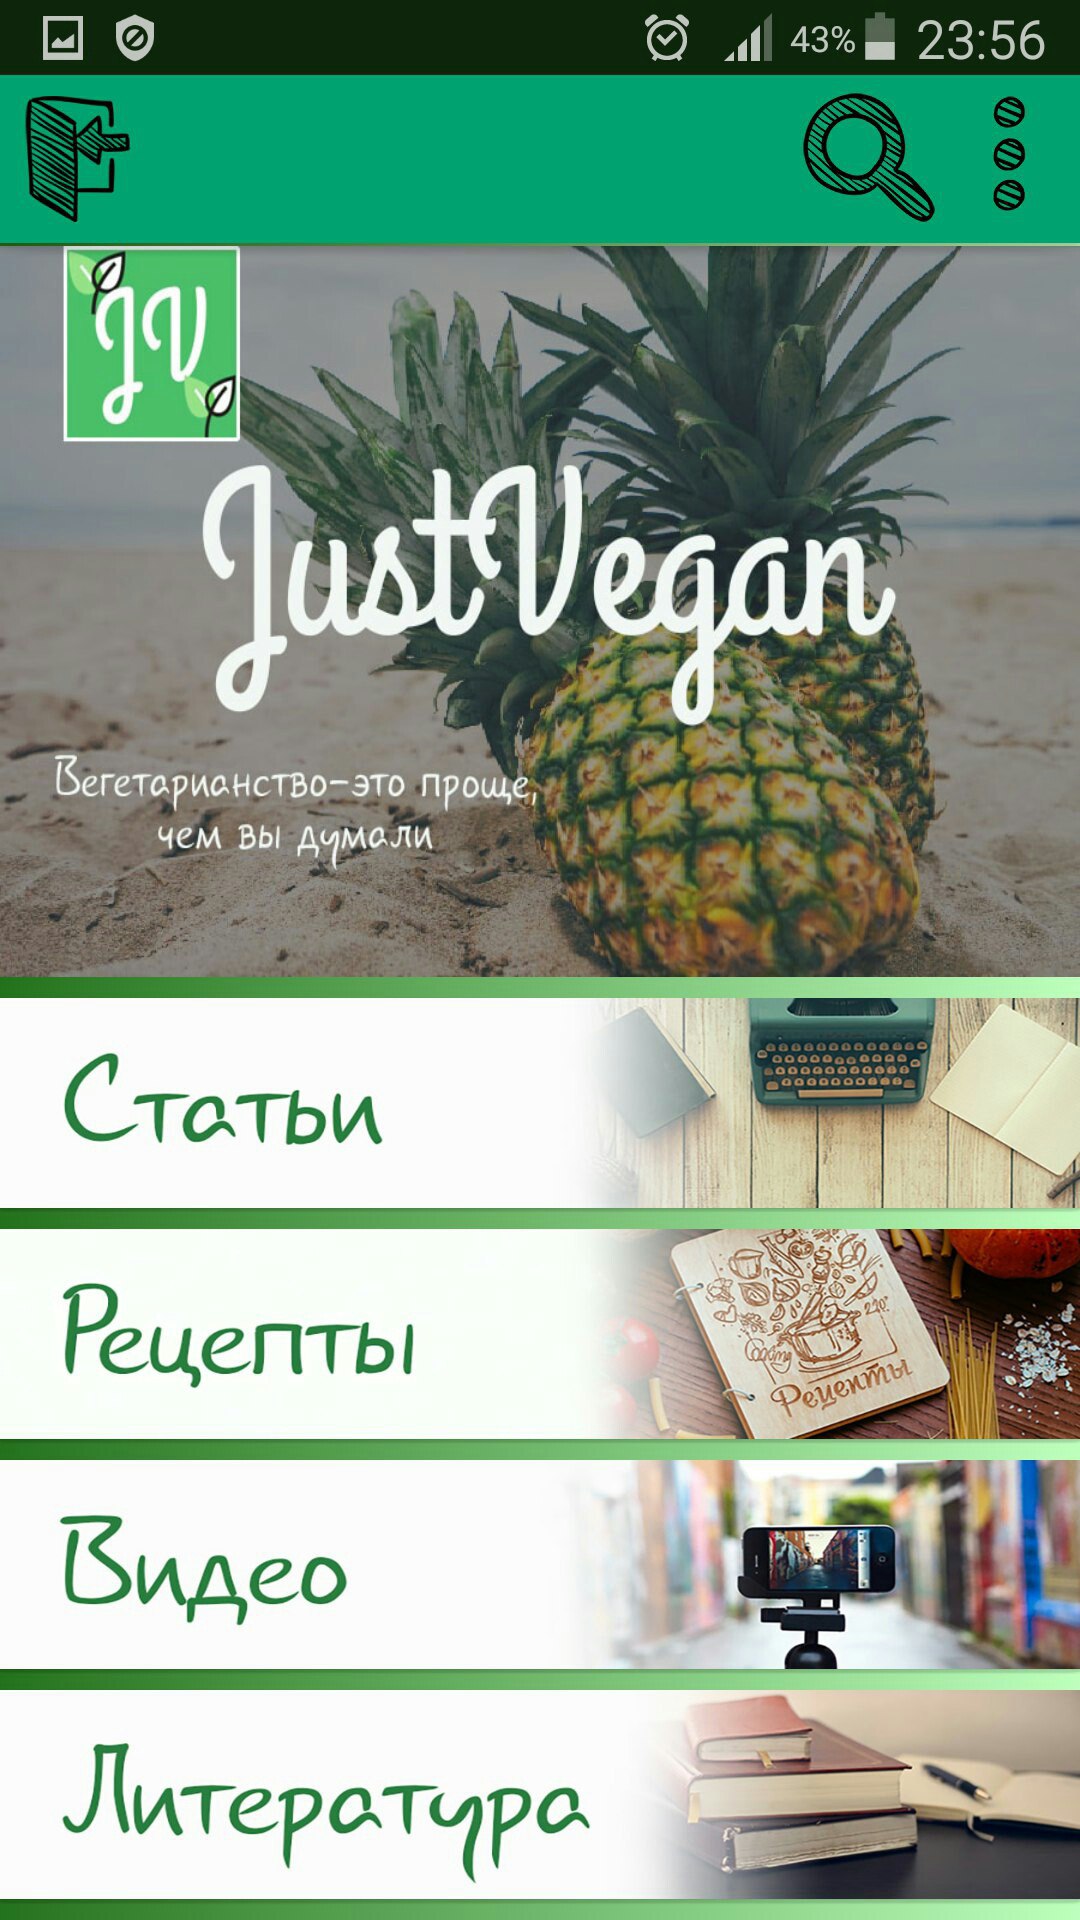 Just Vegan - новое мобильное приложение для веганов и вегетарианцев | Центр защиты прав животных «ВИТА»